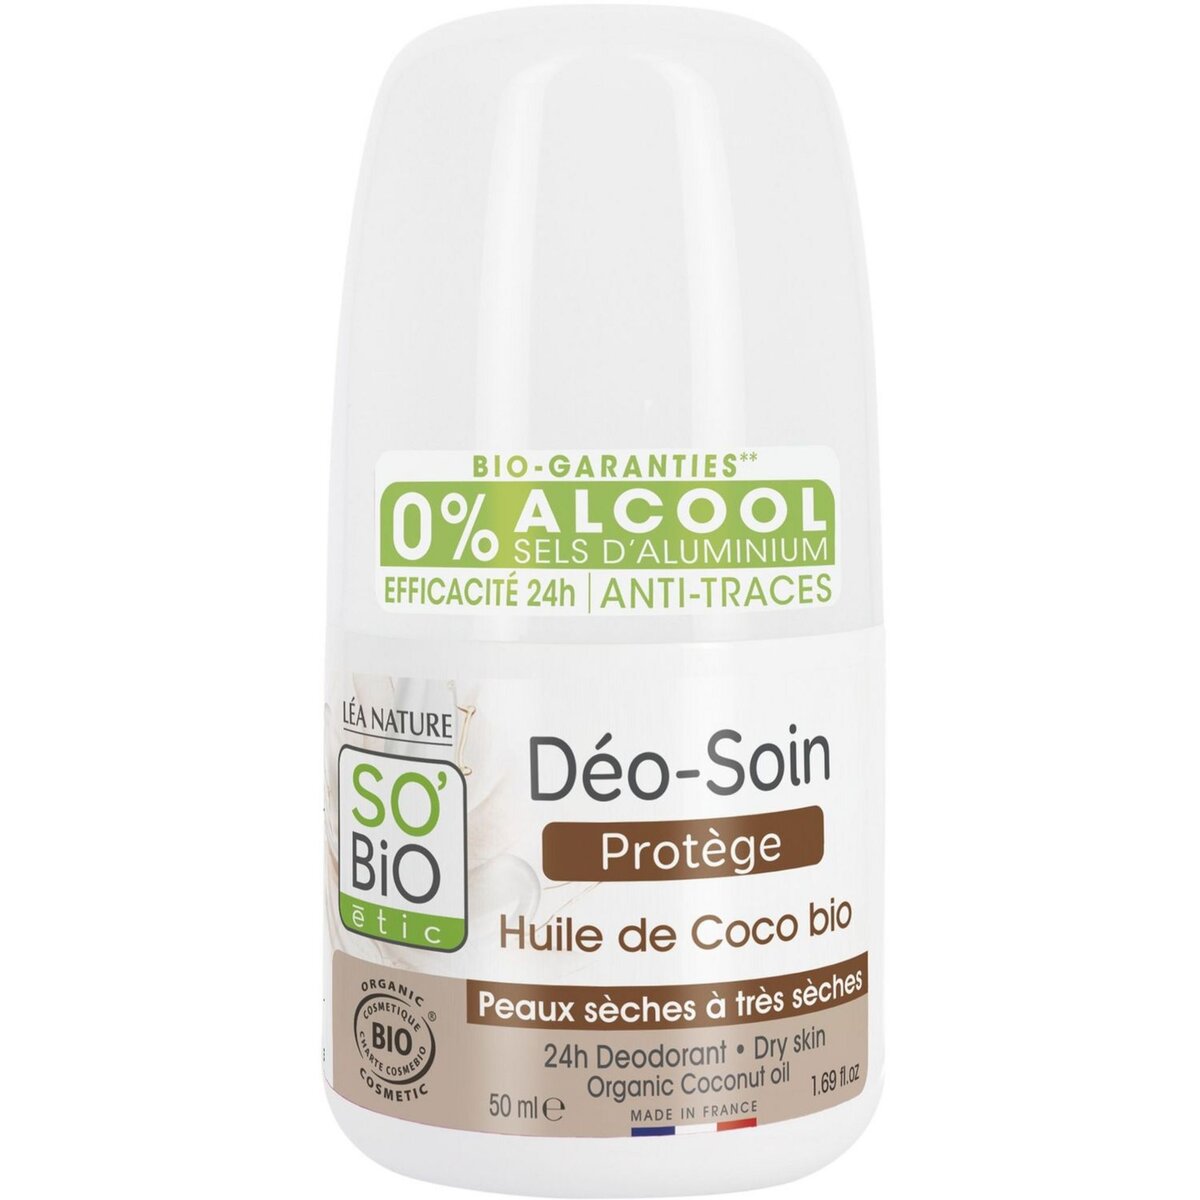 SO BIO ETIC Déodorant bille soin huile de coco bio peaux sèches à sensibles 50ml